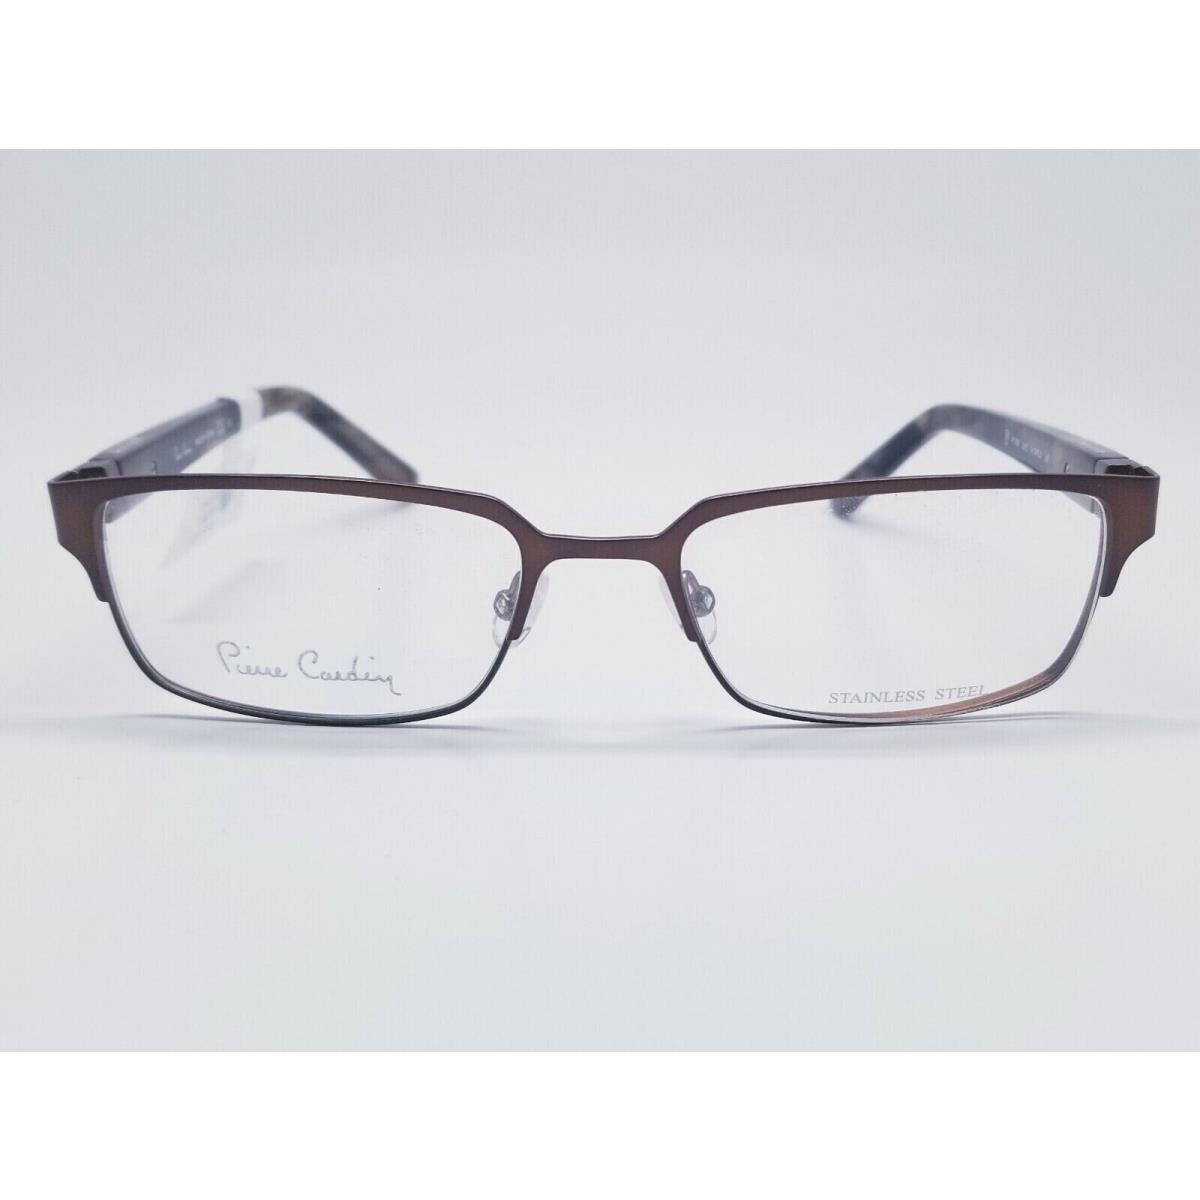 1 Unit Pierre Cardin Matte Dark Brown Eyeglass Frame 53-18-140 417